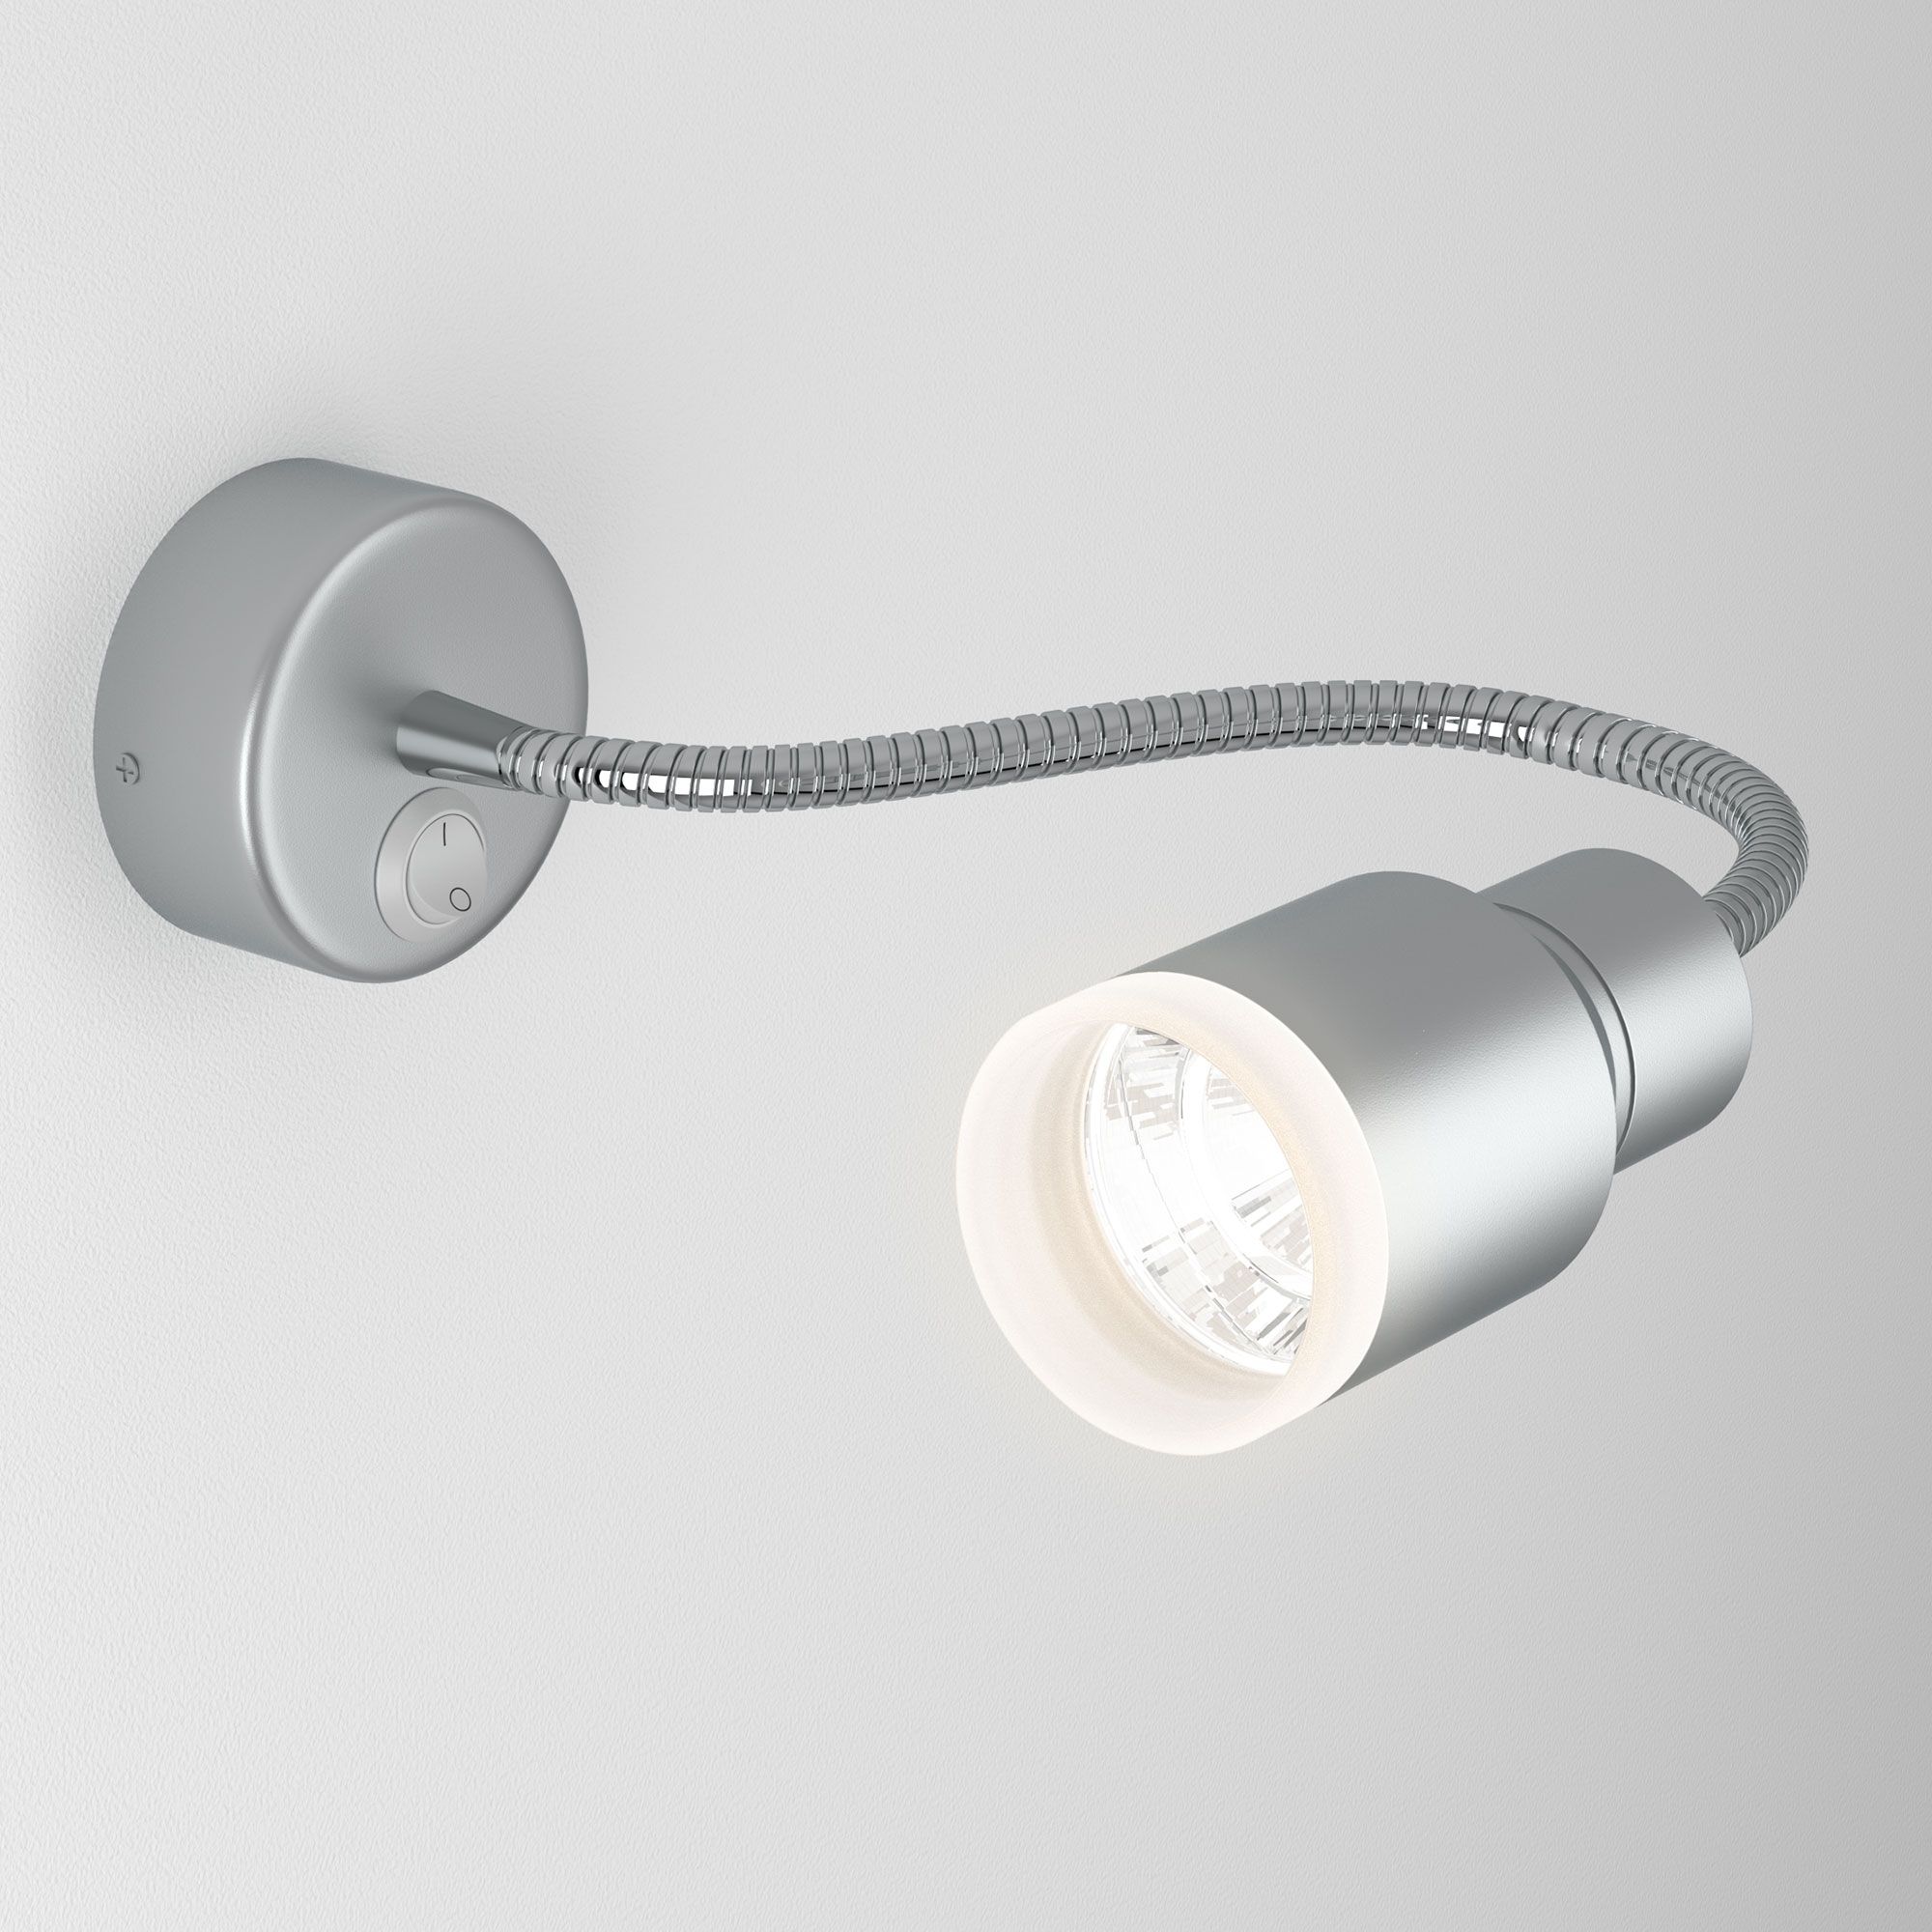 Настенный светодиодный светильник с гибким корпусом Molly LED MRL LED 1015 серебро